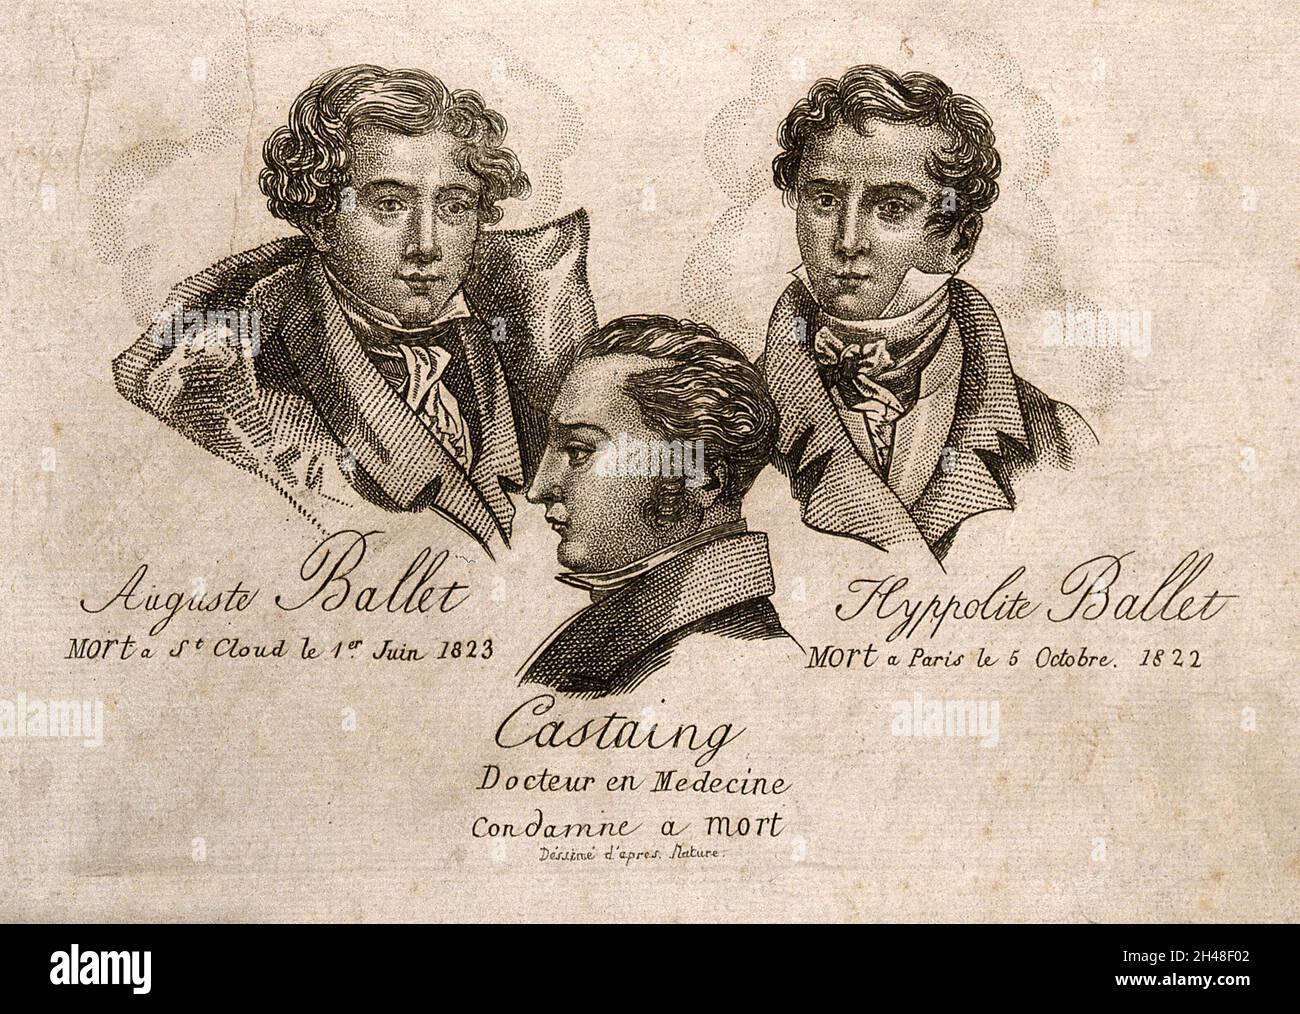 Edme-Samuel Castaing, l'empoisonneur, et ses deux victimes: Auguste et Hippolite Ballet.Gravure. Banque D'Images